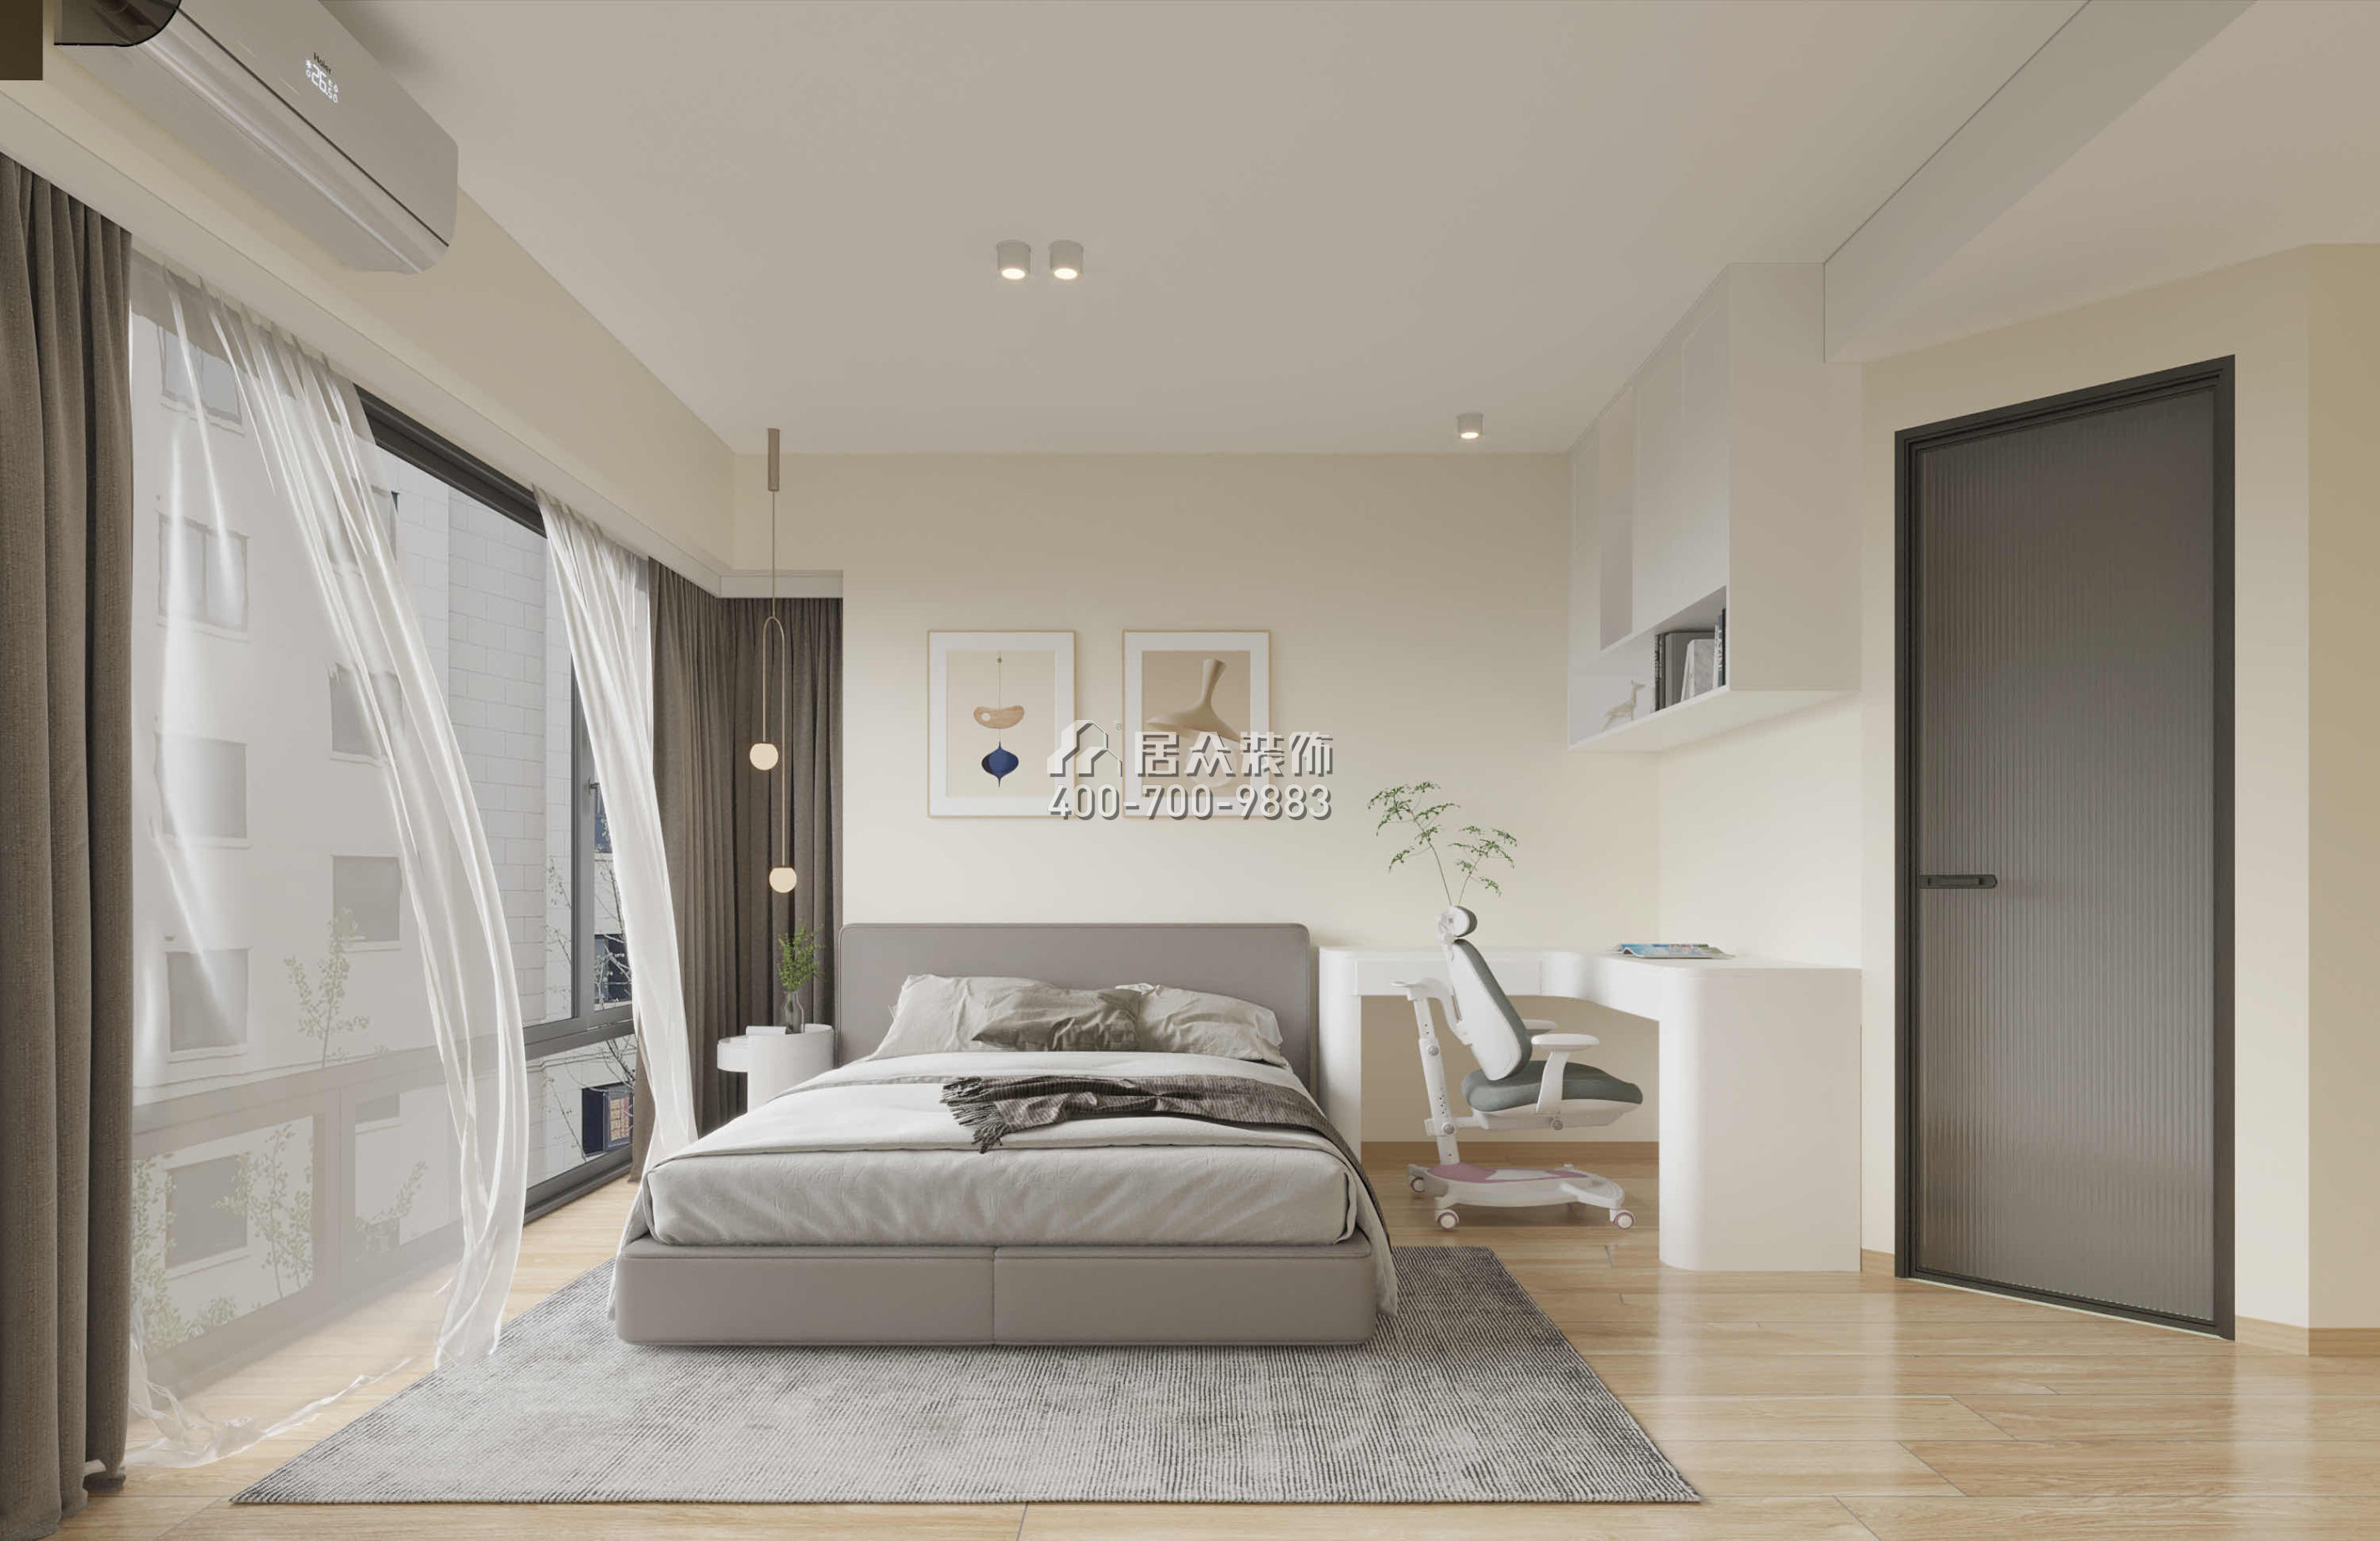 麗晶國際114平方米現代簡約風格平層戶型臥室裝修效果圖